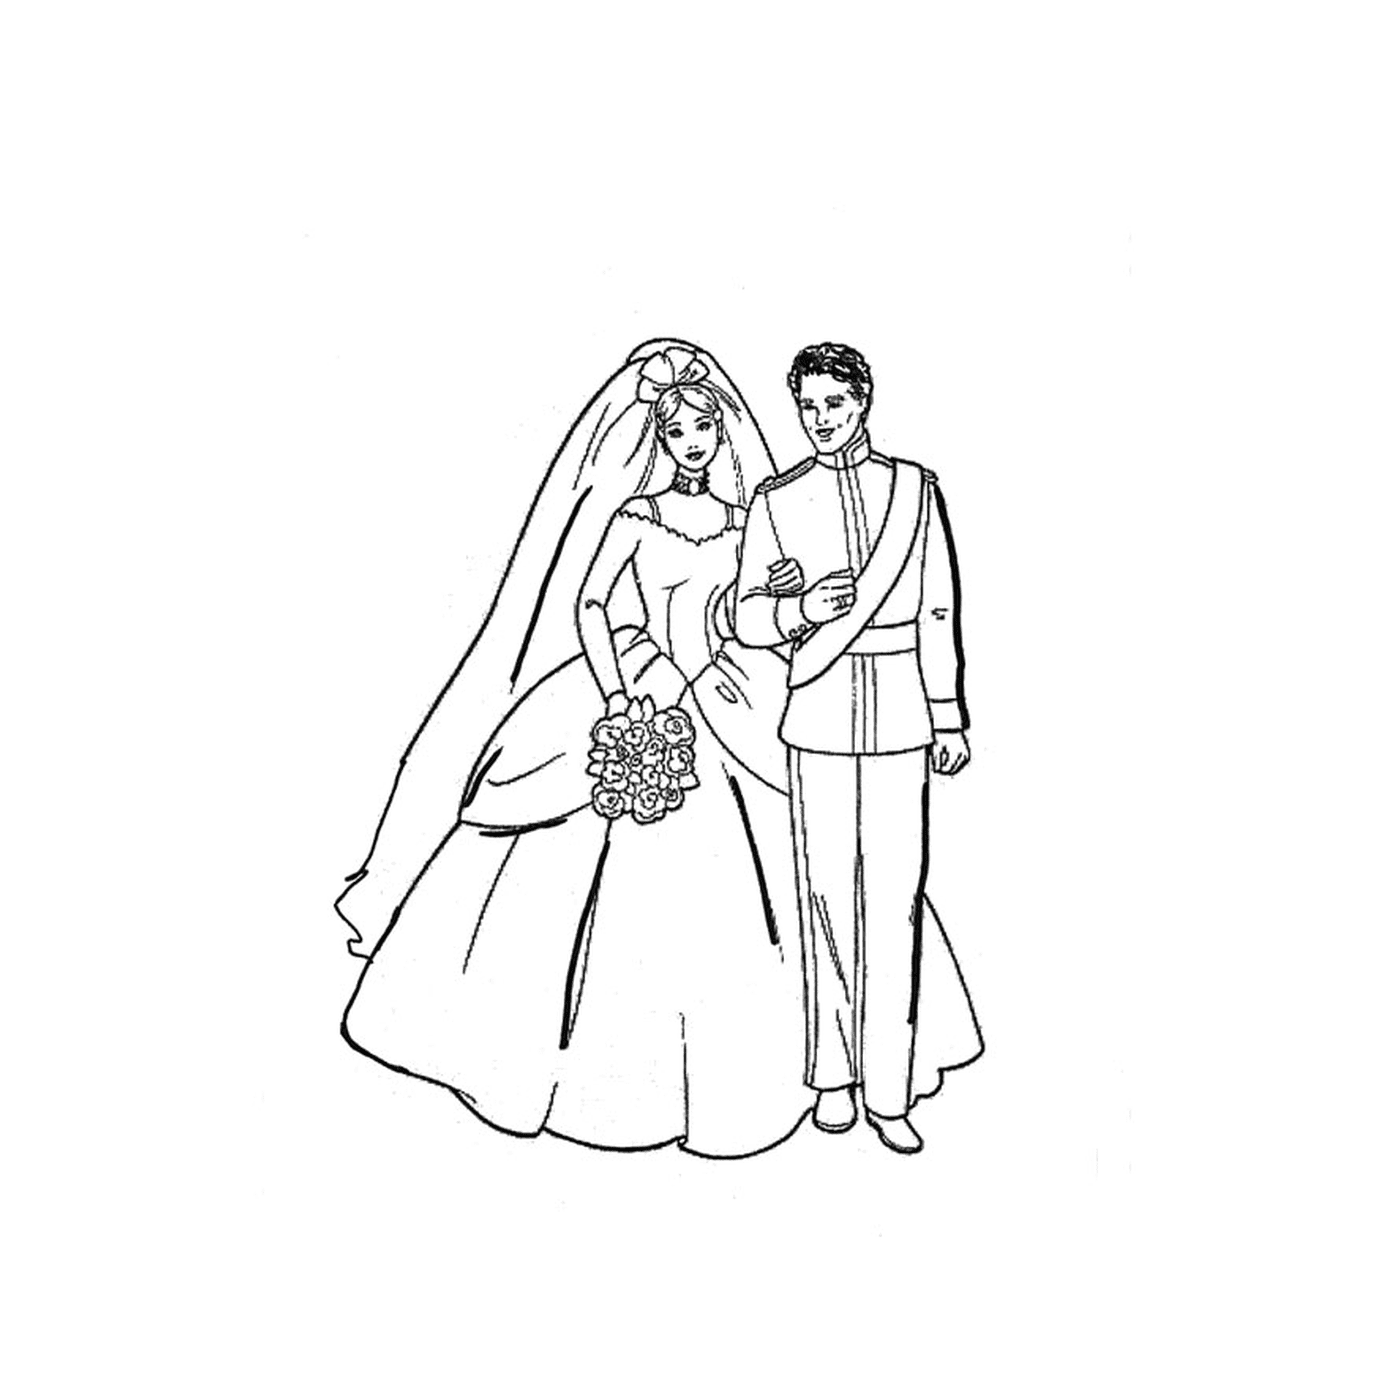  Мужчина и женщина в свадебном платье держатся вместе 